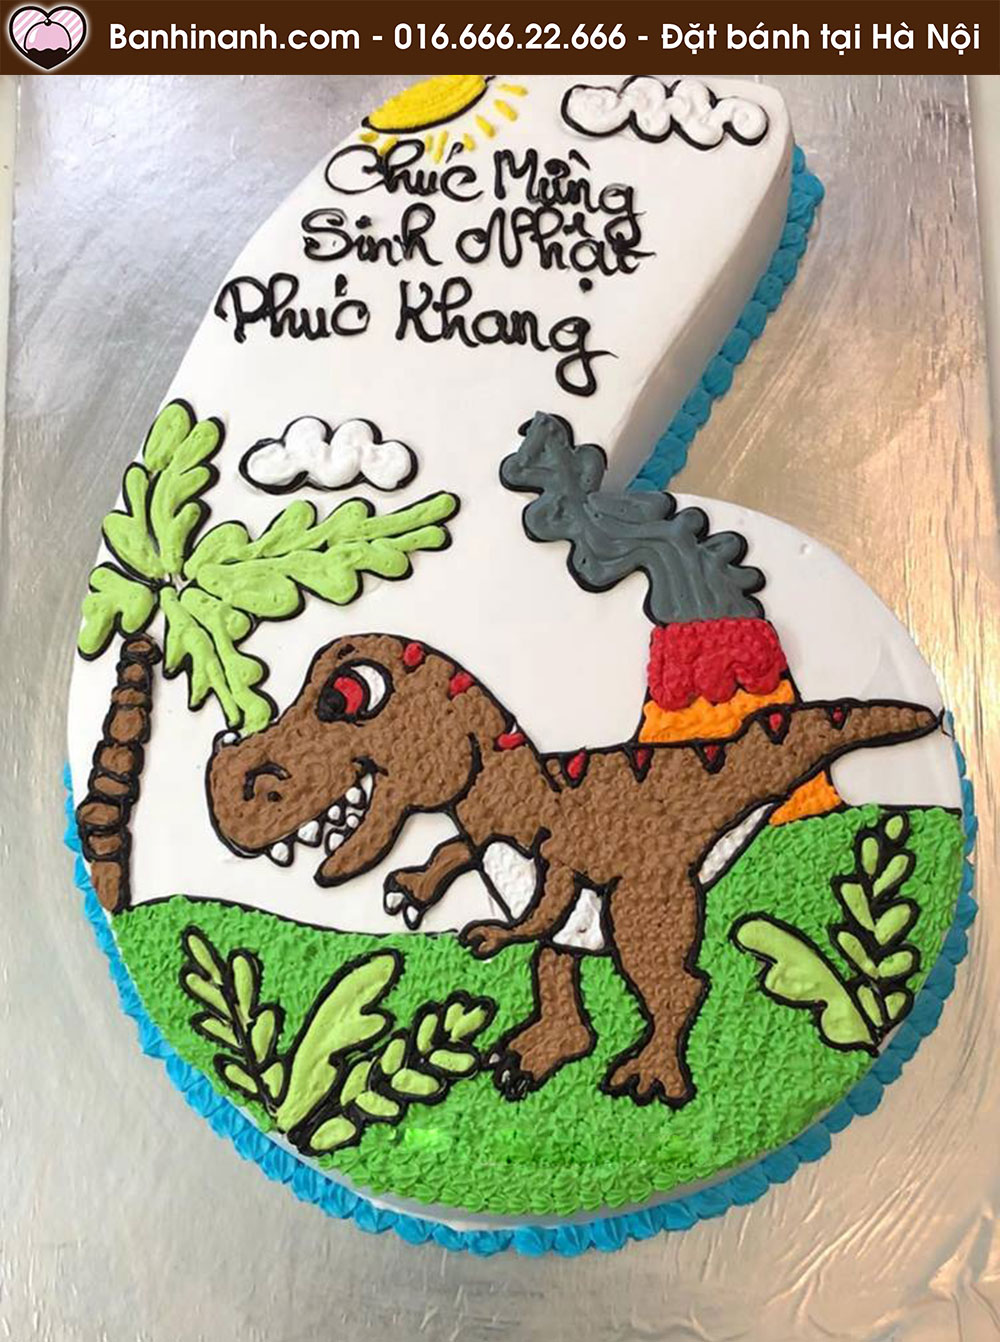 Bánh sinh nhật cắt hình số 6 vẽ khủng long bạo chúa T-rex cực ngầu 1141 - Bánh gato sinh nhật ngon đẹp